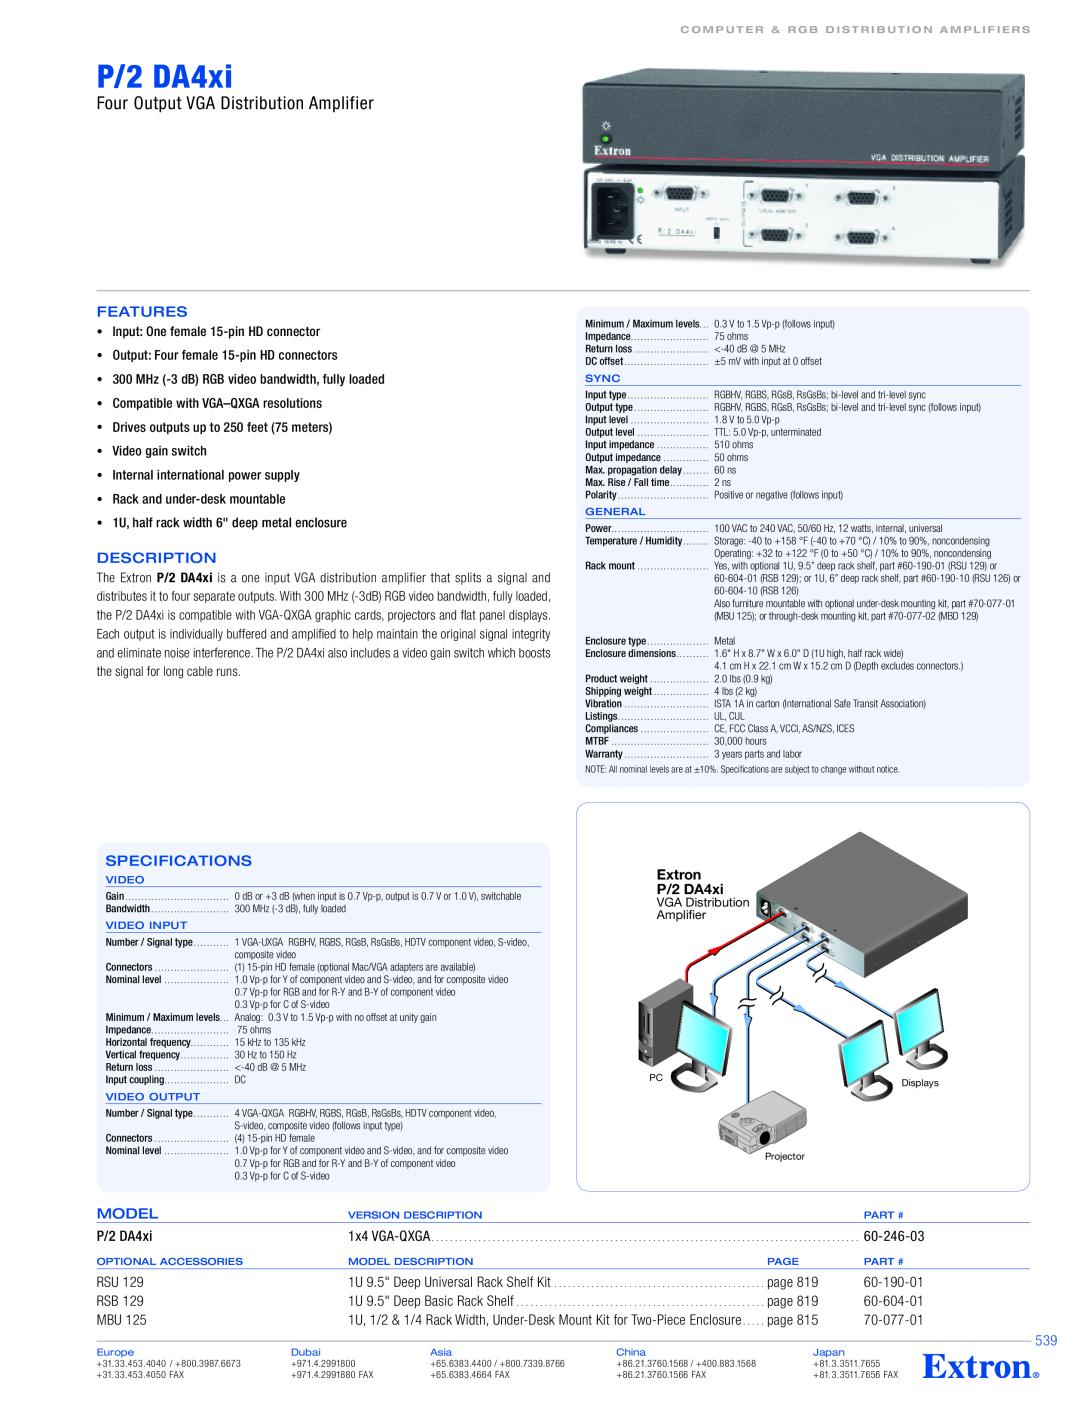 Extron electronic 246-03 specifications P/2 DA4xi, Four Output VGA Distribution Amplifier, Features, Description, Model 